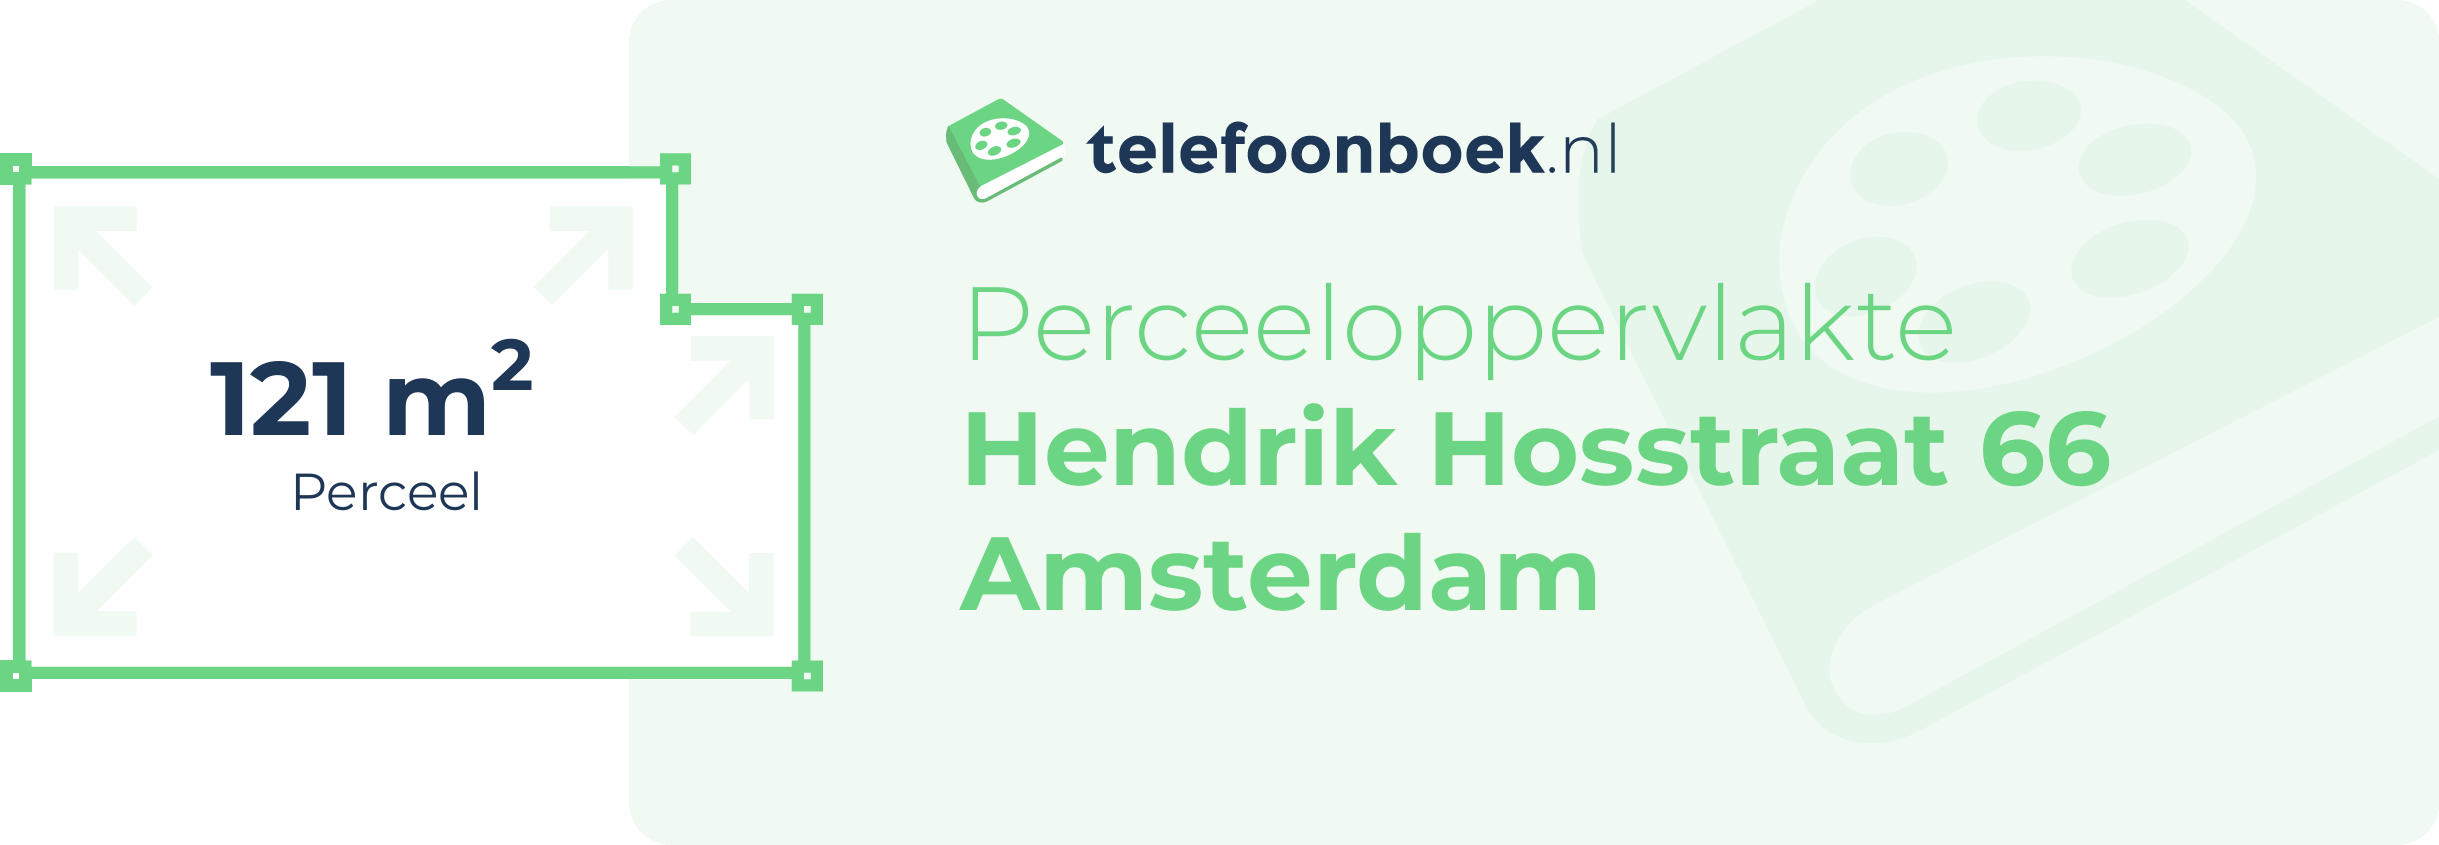 Perceeloppervlakte Hendrik Hosstraat 66 Amsterdam